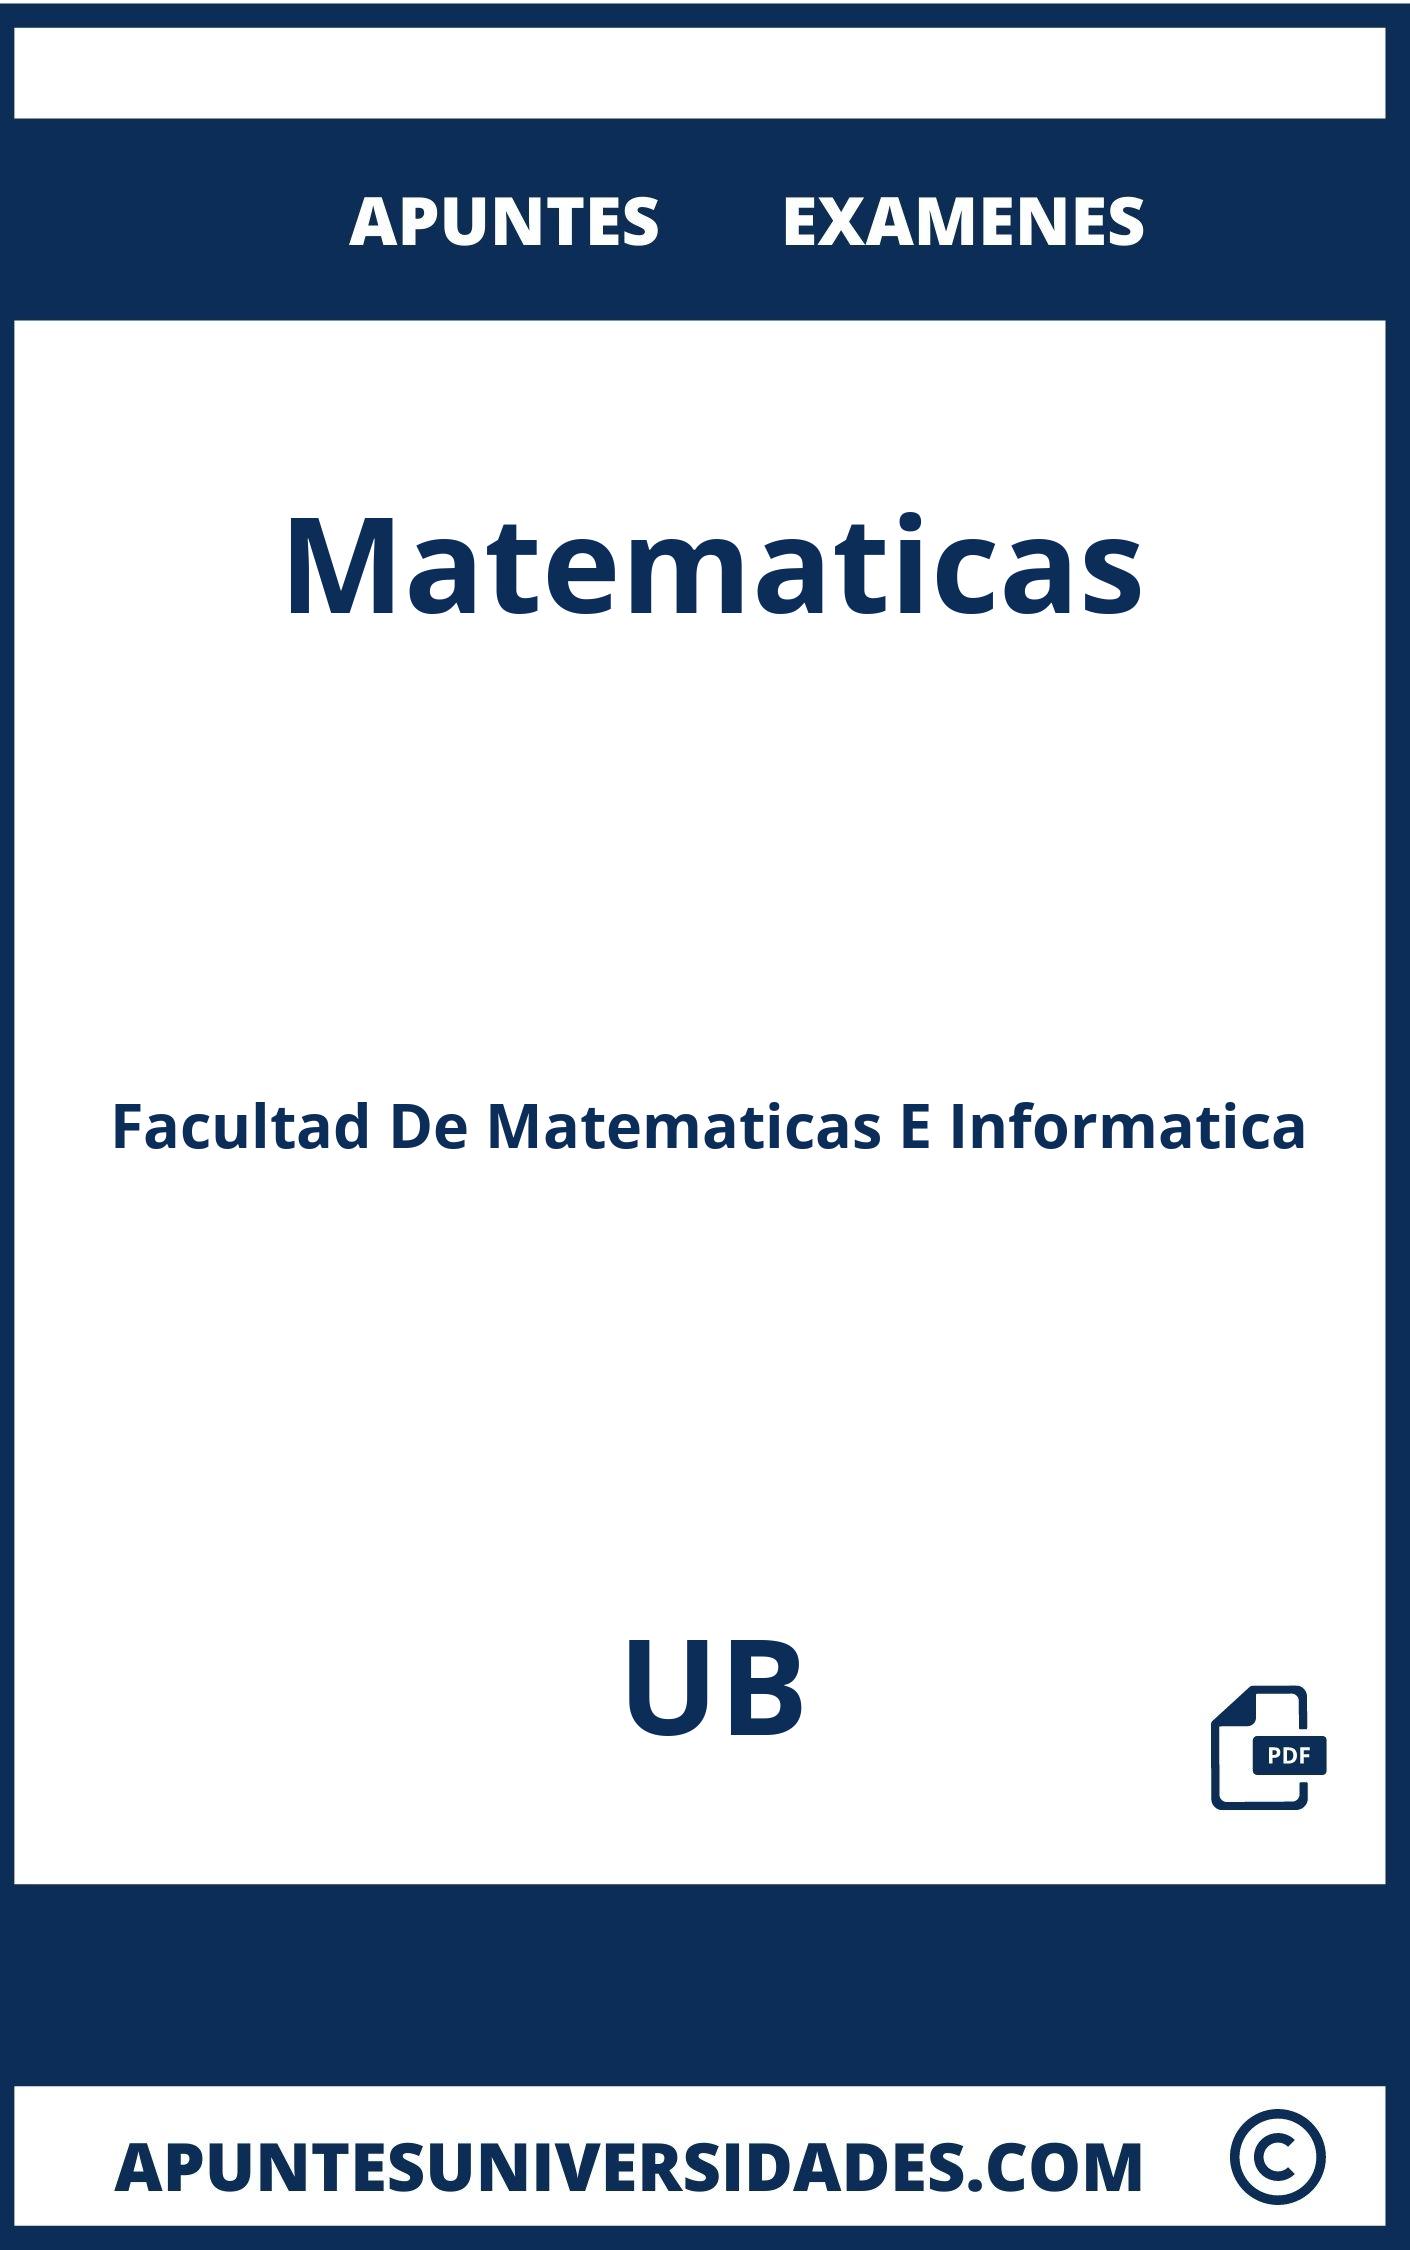 Examenes y Apuntes de Matematicas UB